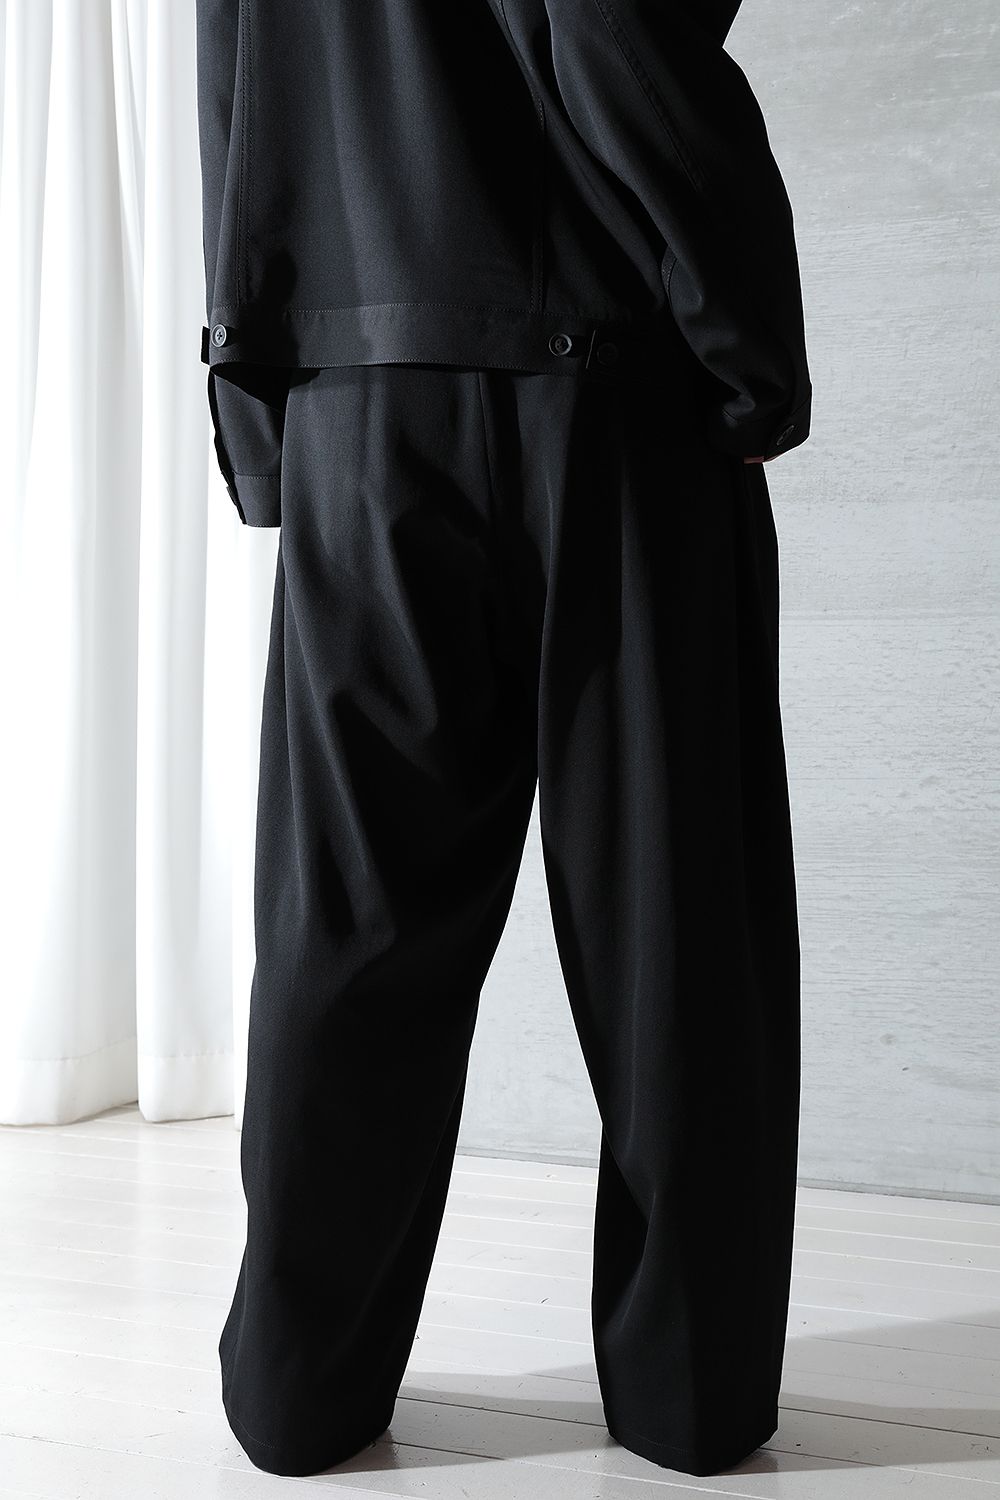 正規品人気 Yohji Yamamoto - yohji yamamoto 紐パンツの通販 by